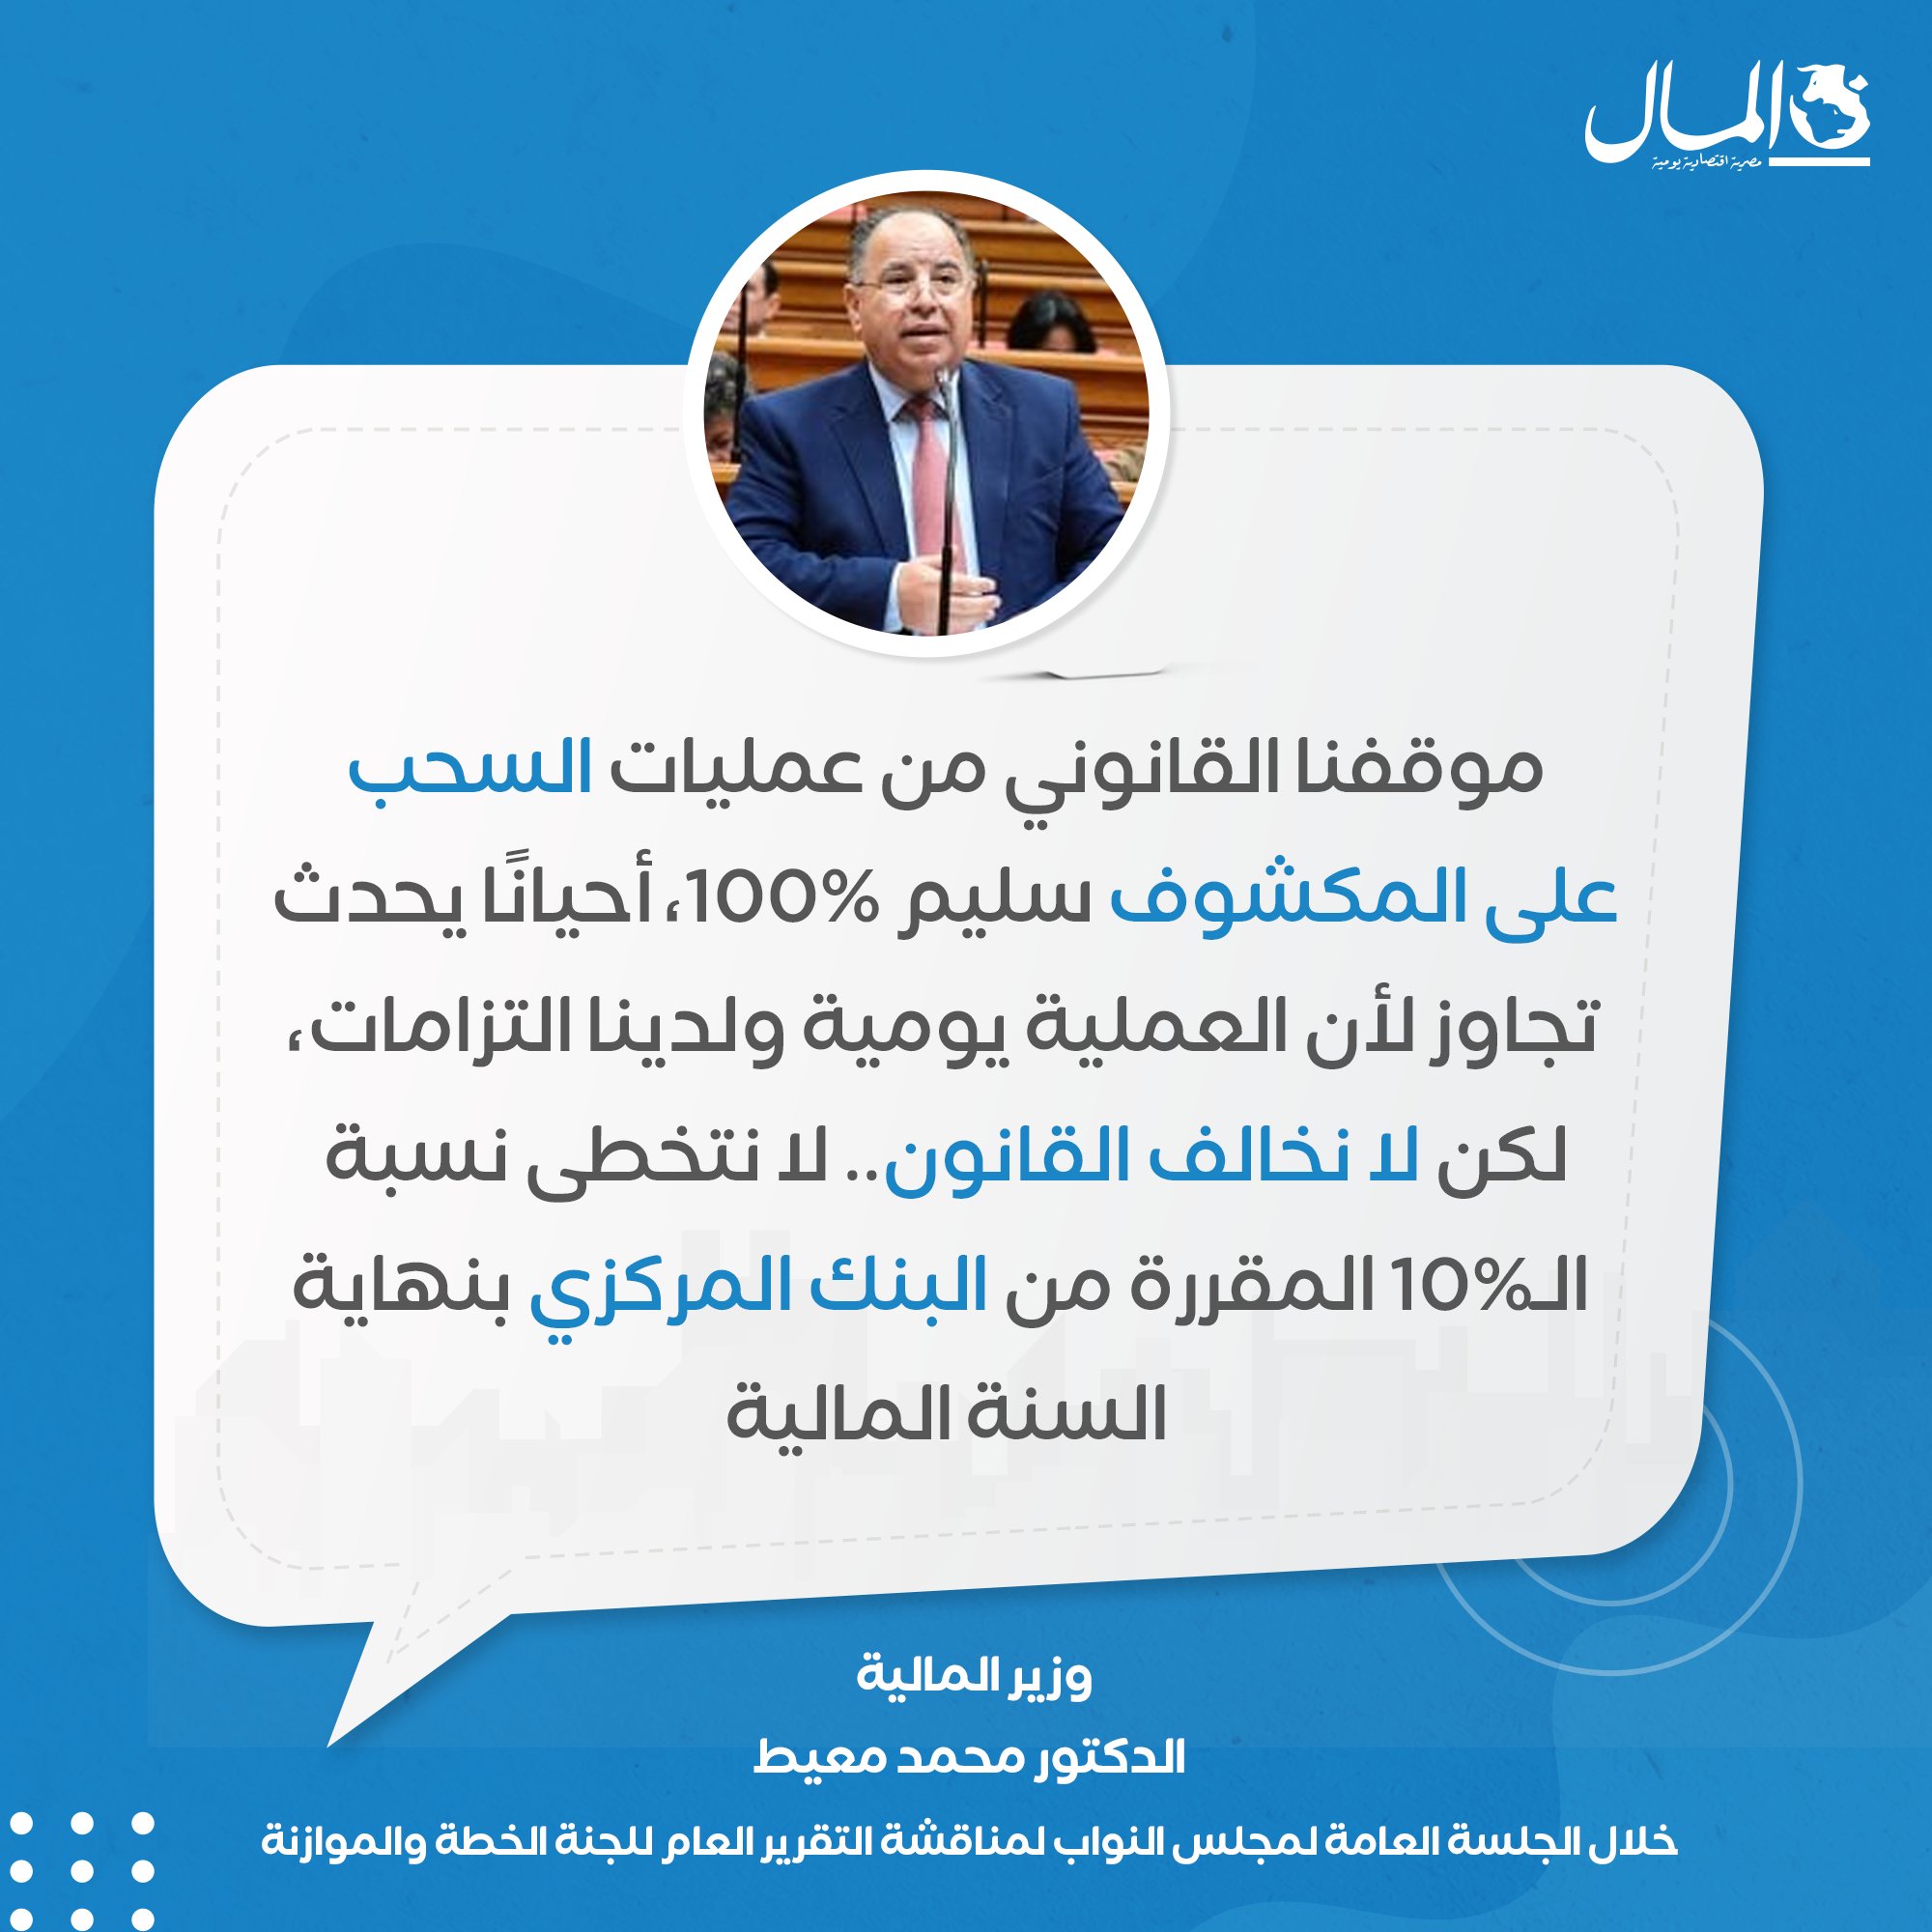 وزير المالية الدكتور محمد معيط يقول إنه ليس من مصلحة الوزارة تخطي حدود السحب على المكشوف لأن ذلك يحملها اعباء مالية إضافية 